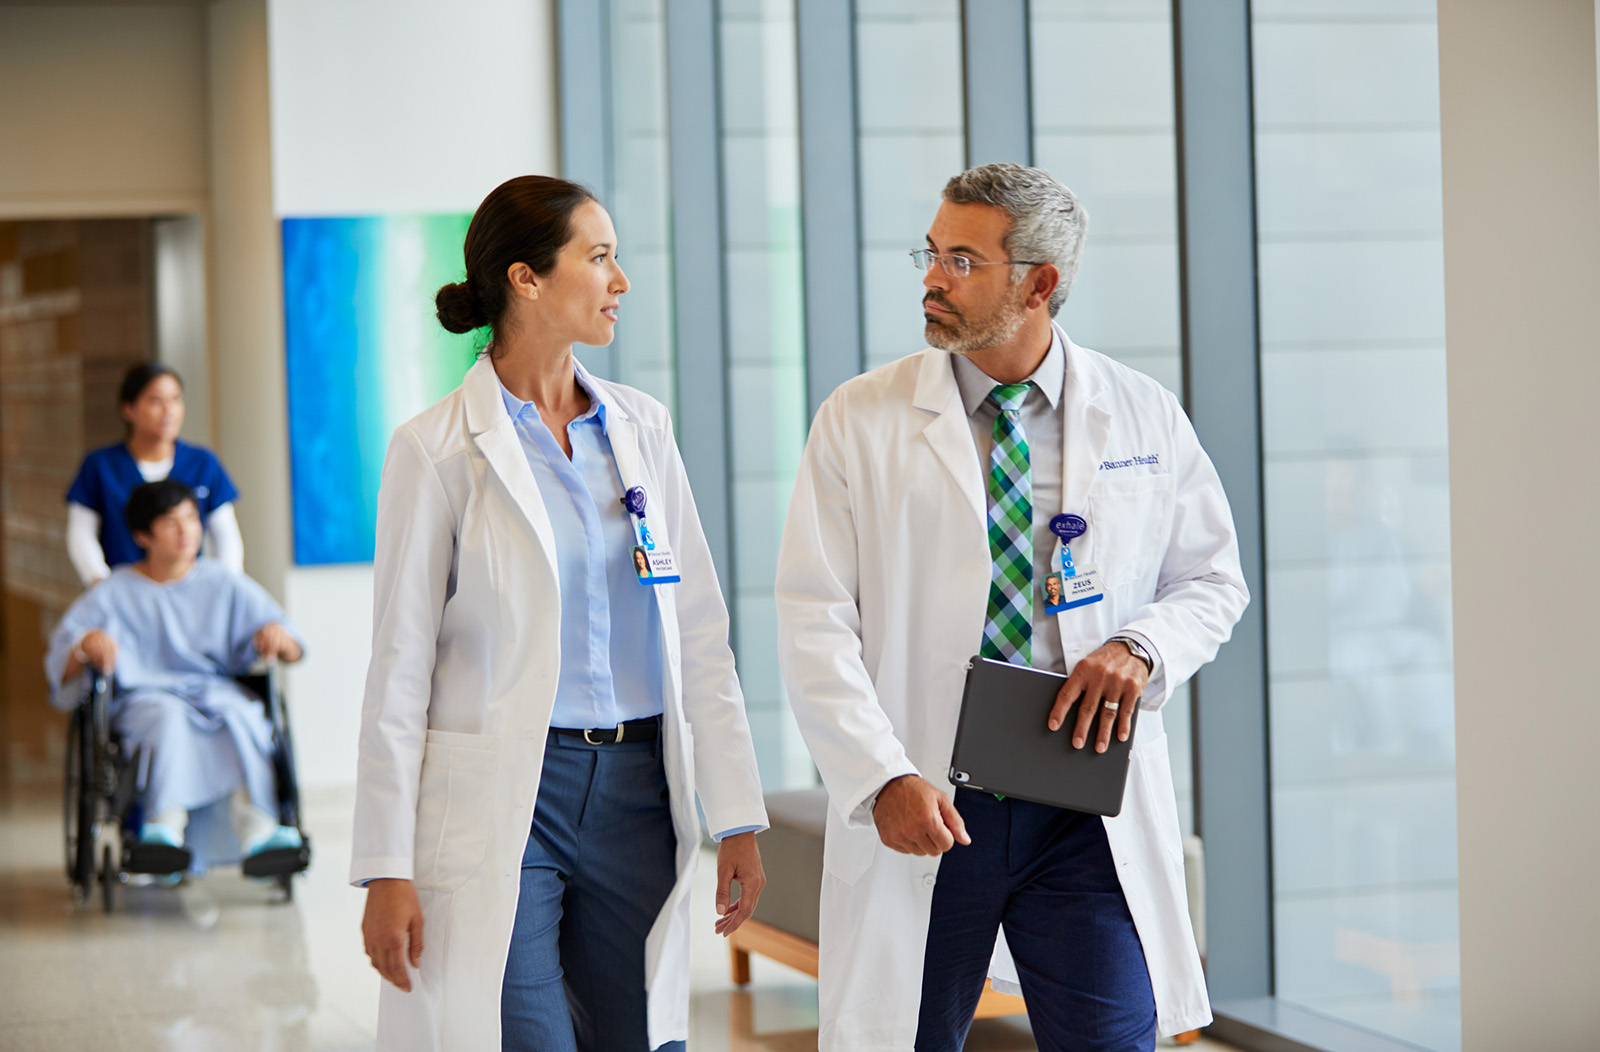 Two physicians walk down a hospital hallway